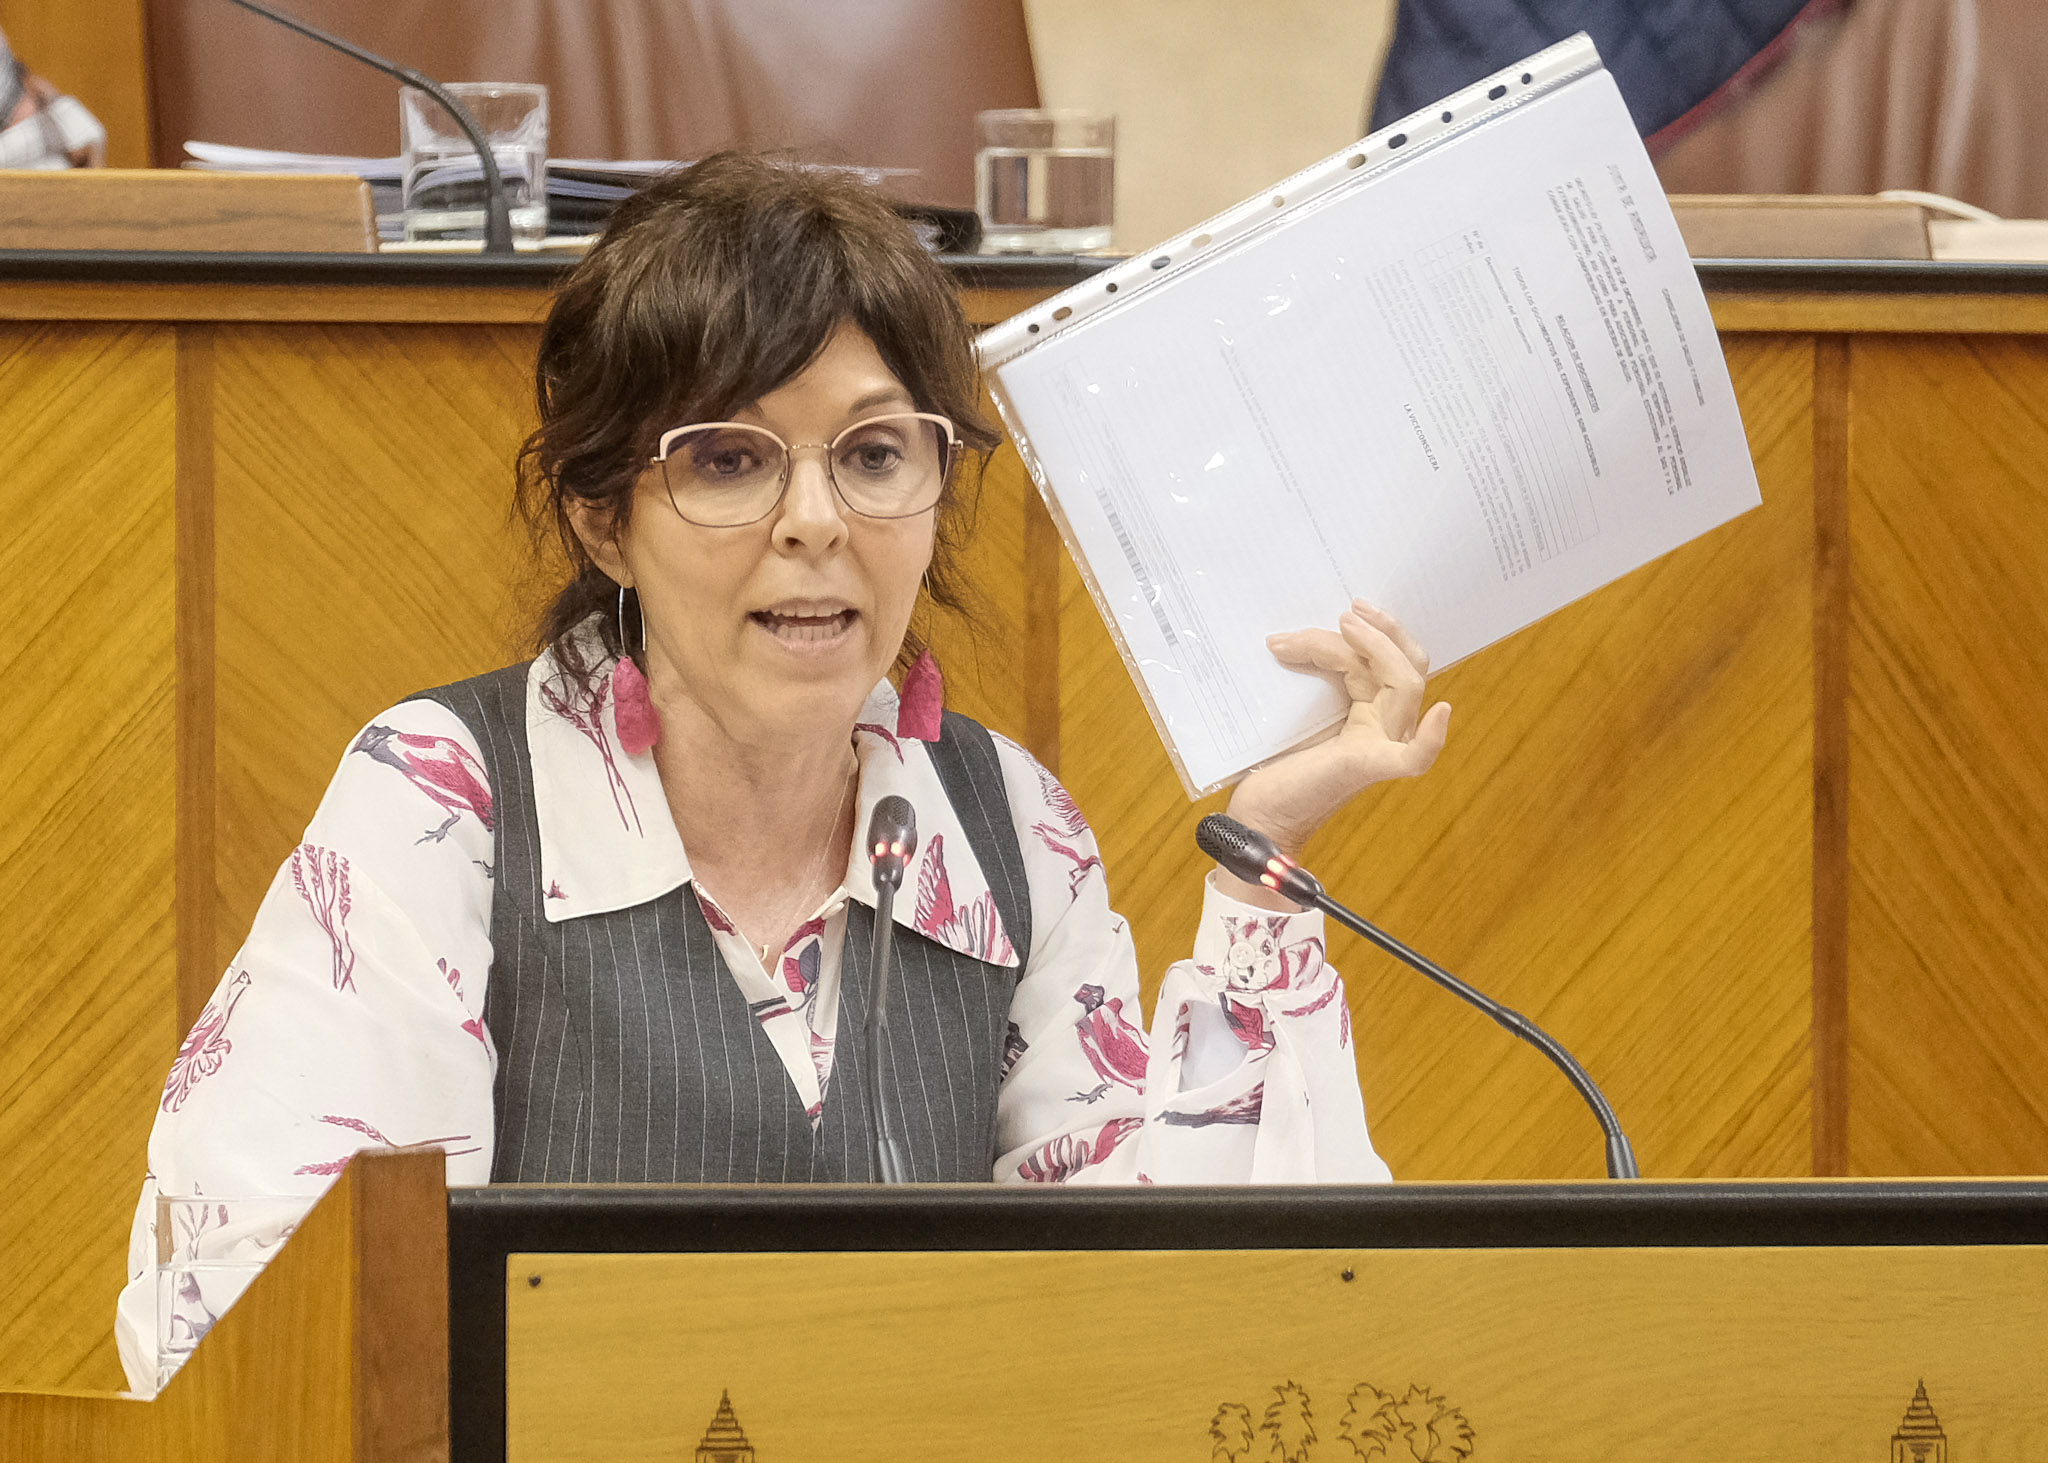    Mara ngeles Prieto, del Grupo Socialista, interviene en la PNL presentada por su grupo relativa a gasto farmacutico en Andaluca